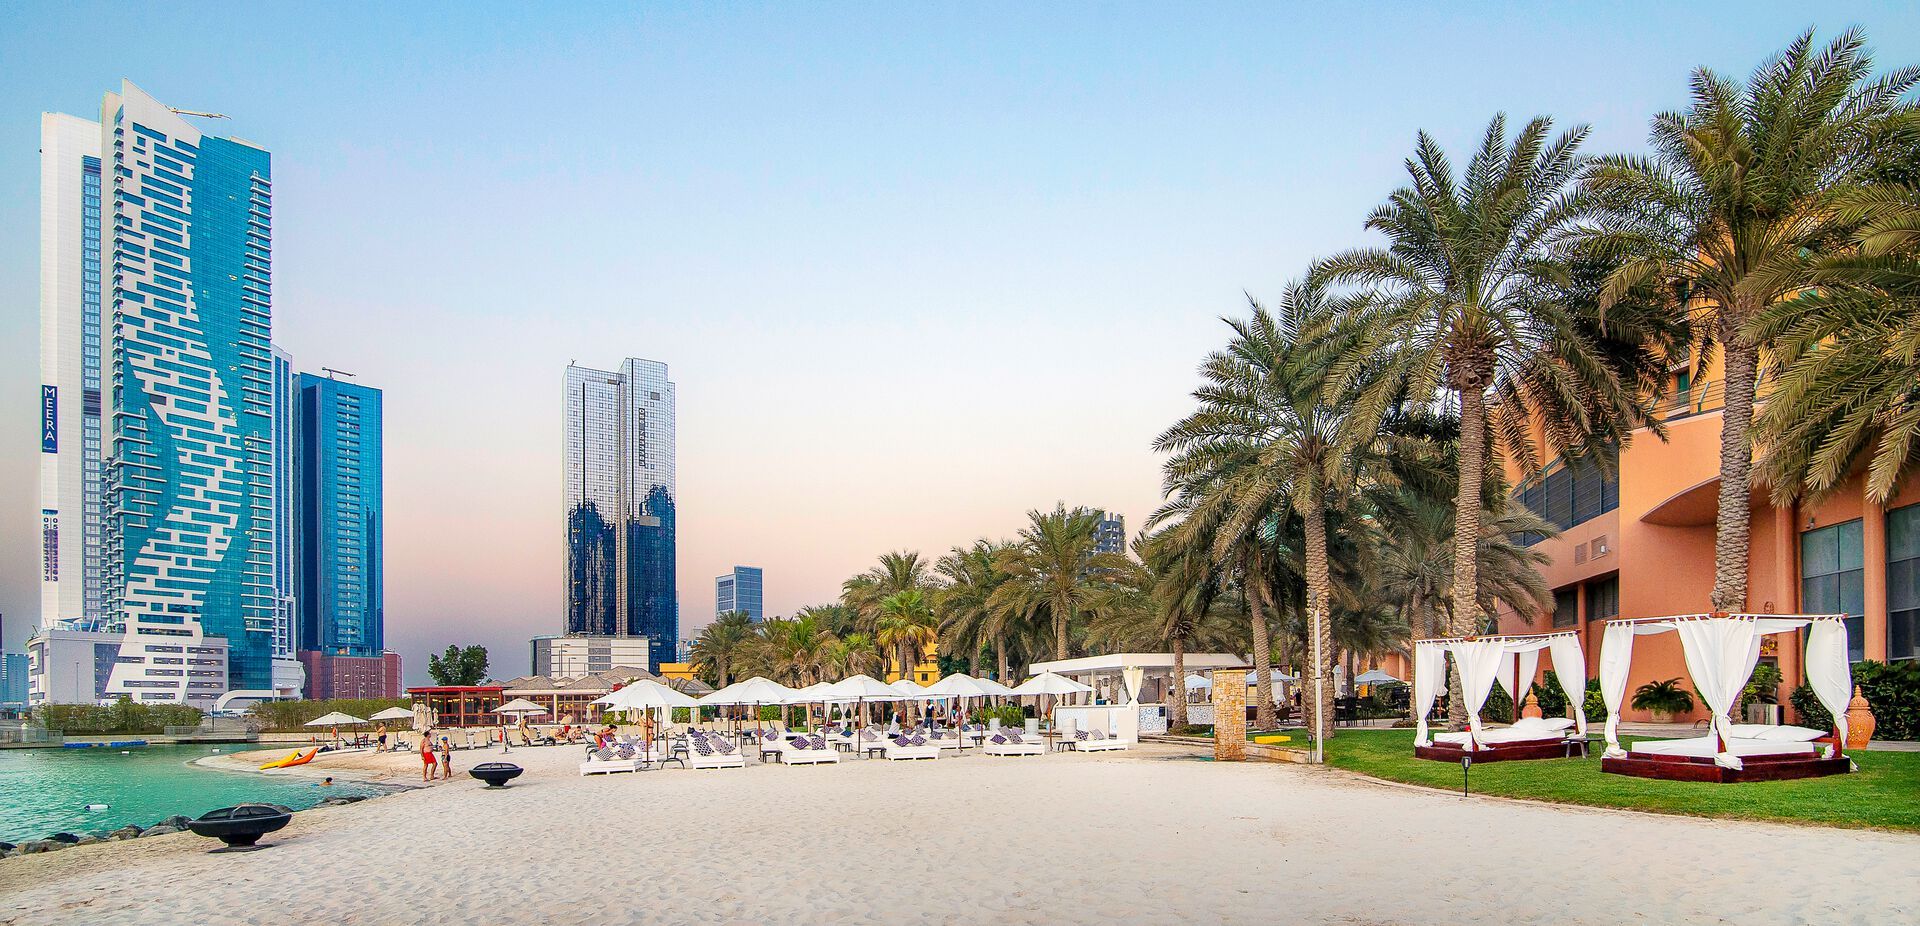 Emirats Arabes Unis - Abu Dhabi - Hôtel Sheraton Abu Dhabi & Resort 5*